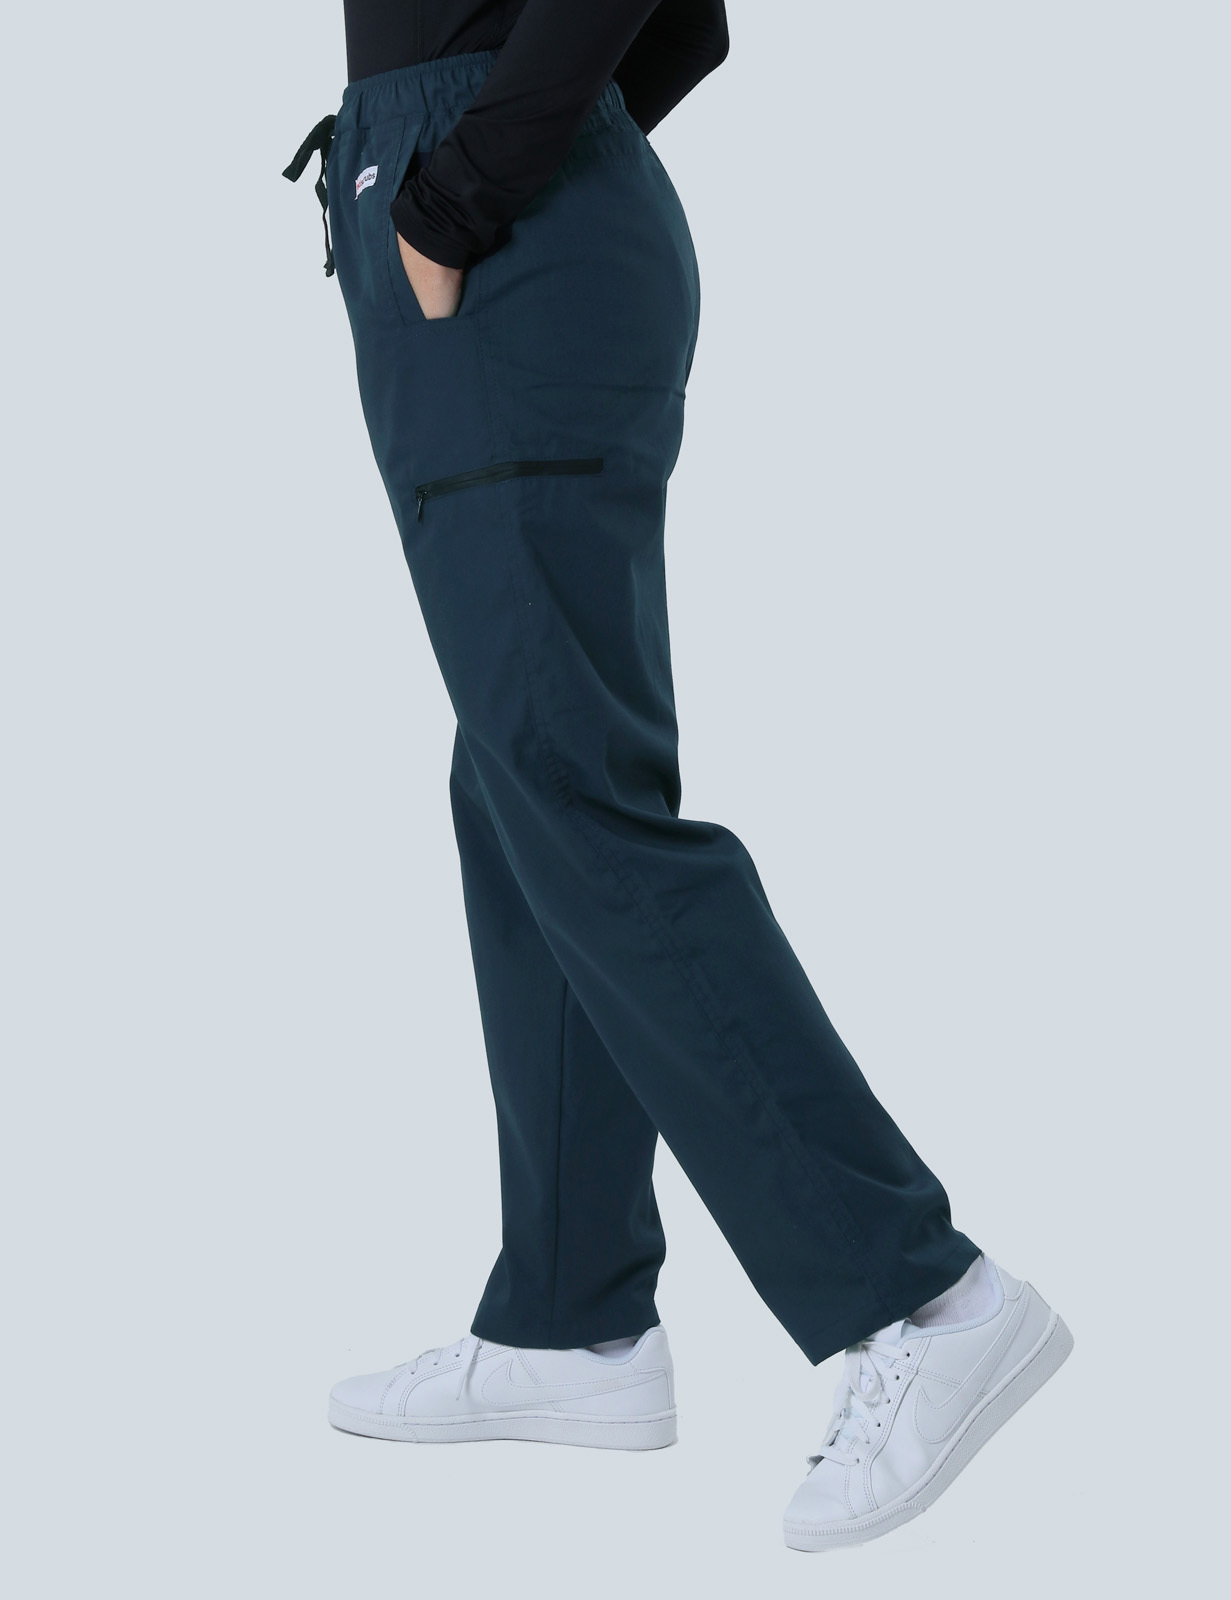 Women's Utility Pants - Navy - Medium